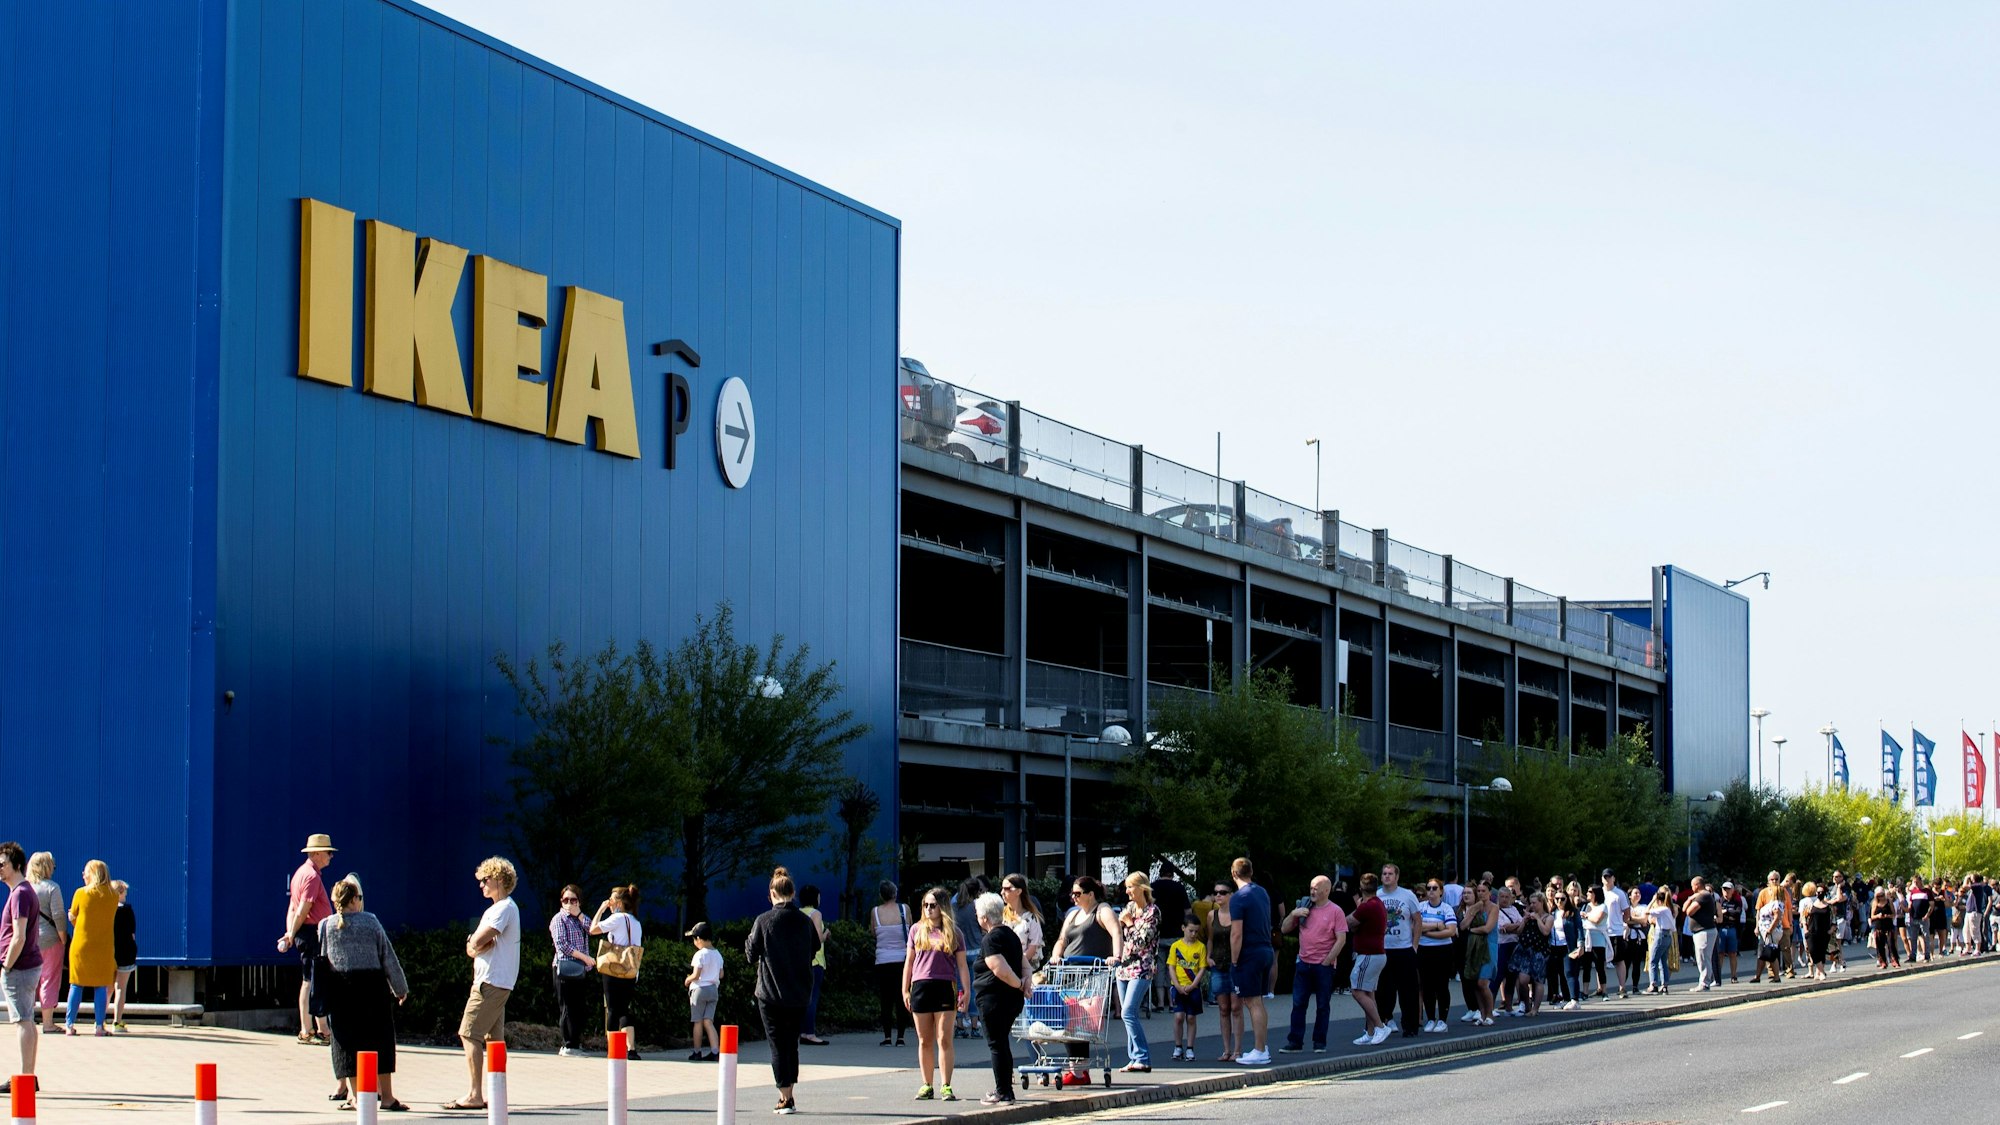 Zahlreiche Menschen stehen vor einem Ikea-Laden, der nach der zwischenzeitlichen Schließung aufgrund der Corona-Krise heute wiedereröffnet hat, in einer langen Schlange neben dem Ikea-Gebäude und warten auf ihren Einlass.